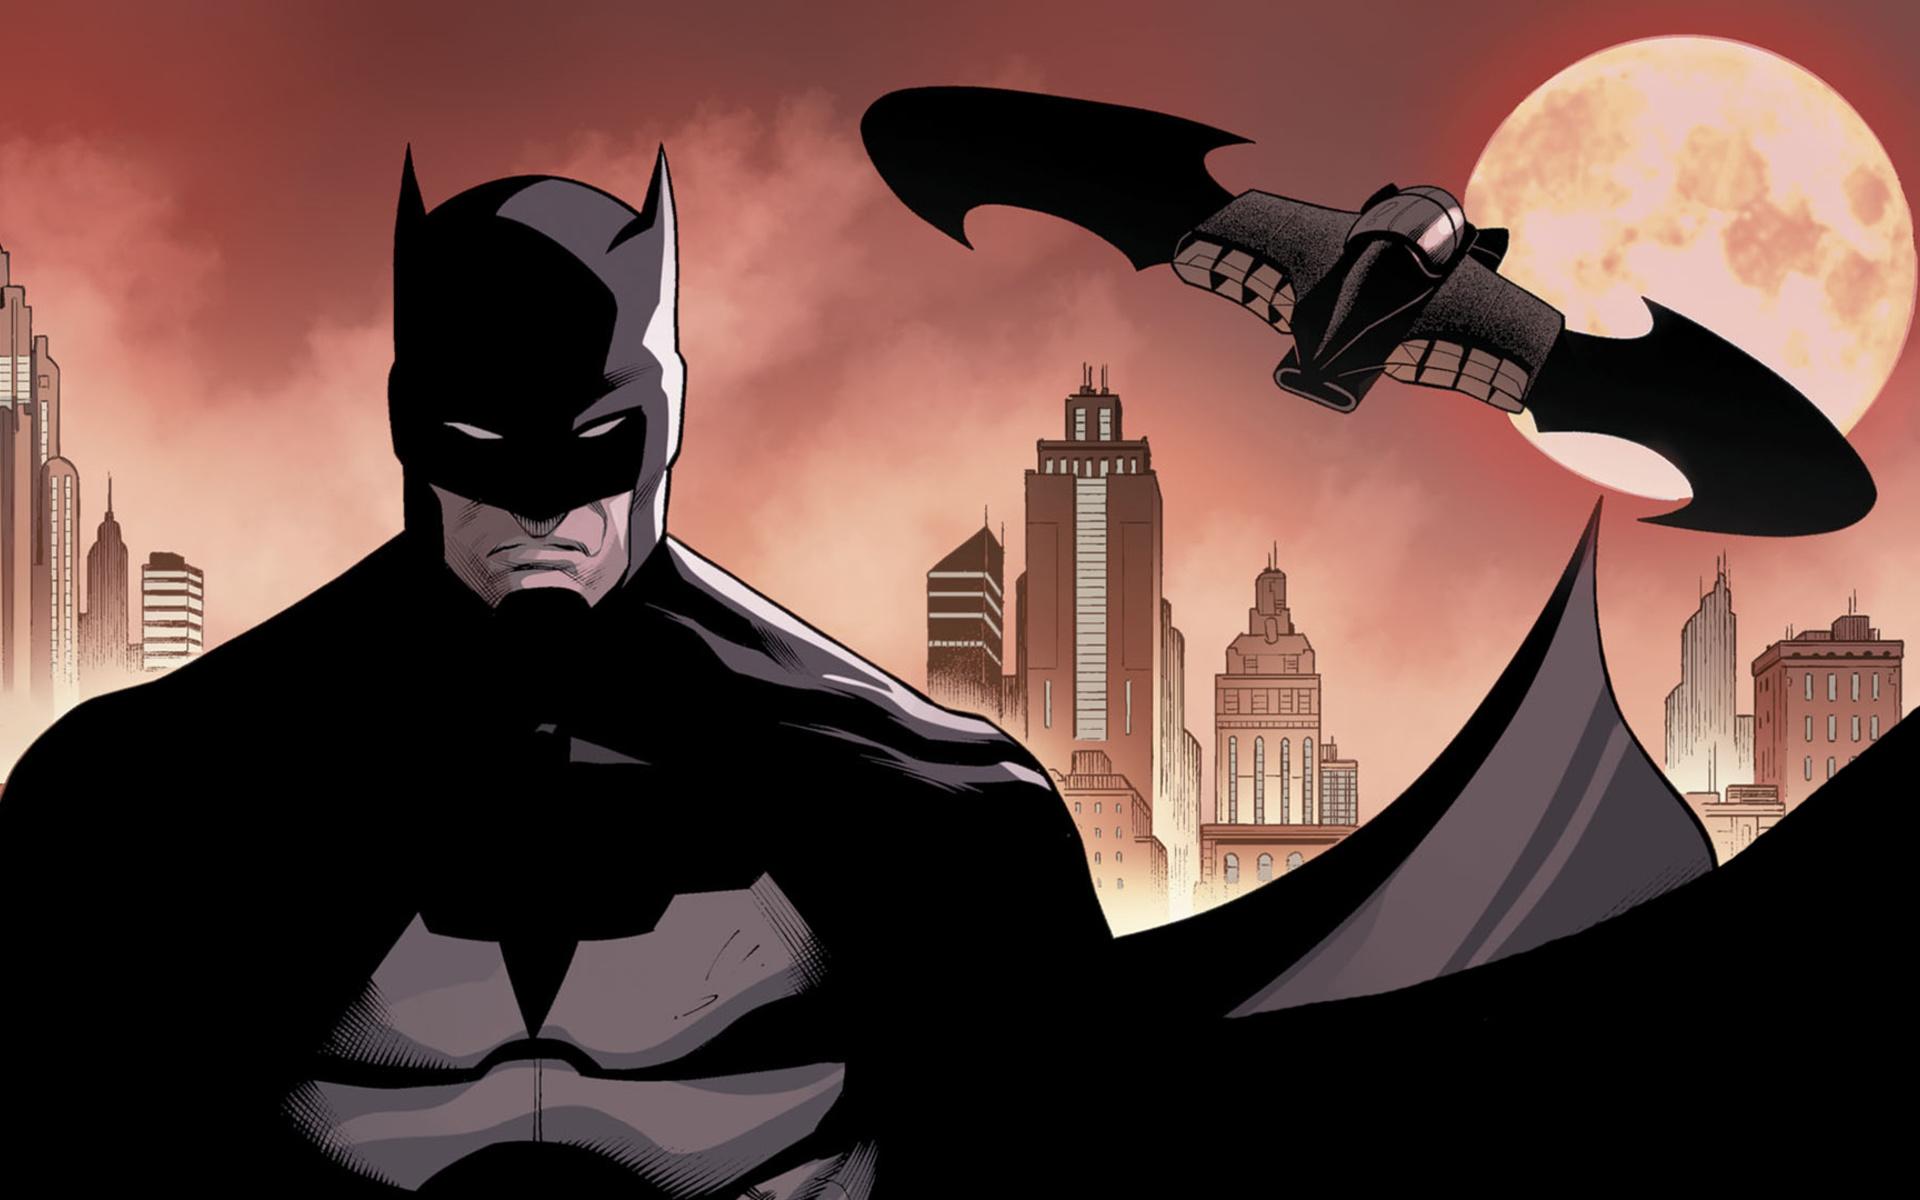 Download wallpaper Batman, art, superheroes, Batmobile, DC Comics